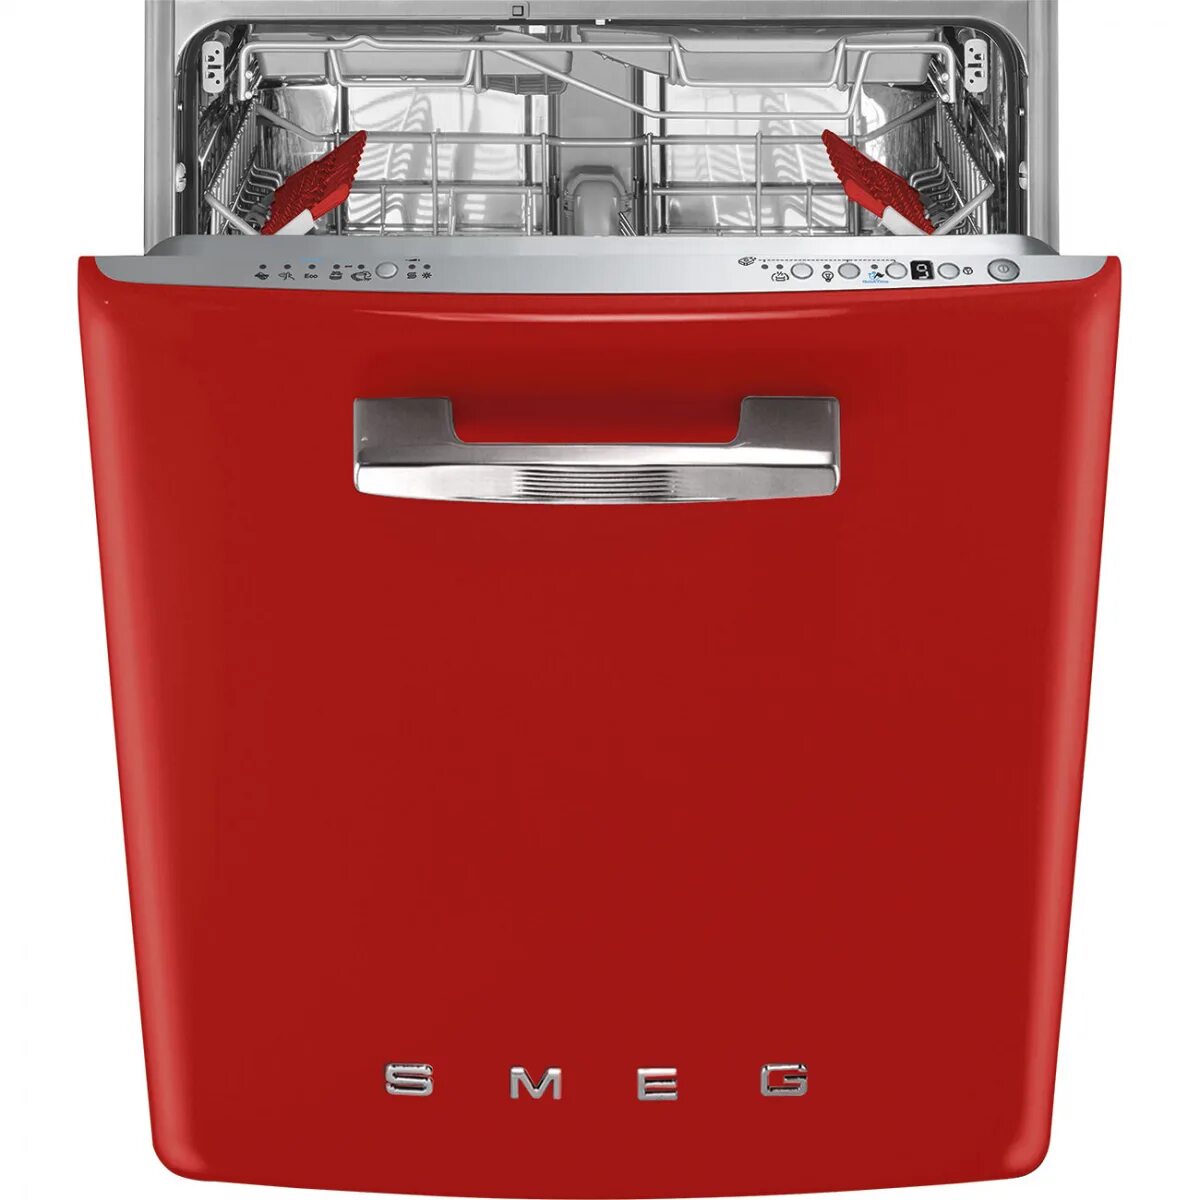 Посудомоечная машина Smeg st2fabr2. Посудомоечная машина Smeg st2fabcr. Смег посудомоечная машина встраиваемая. Посудомоечная машина Смег 45 см встраиваемая. Российские посудомоечные машины